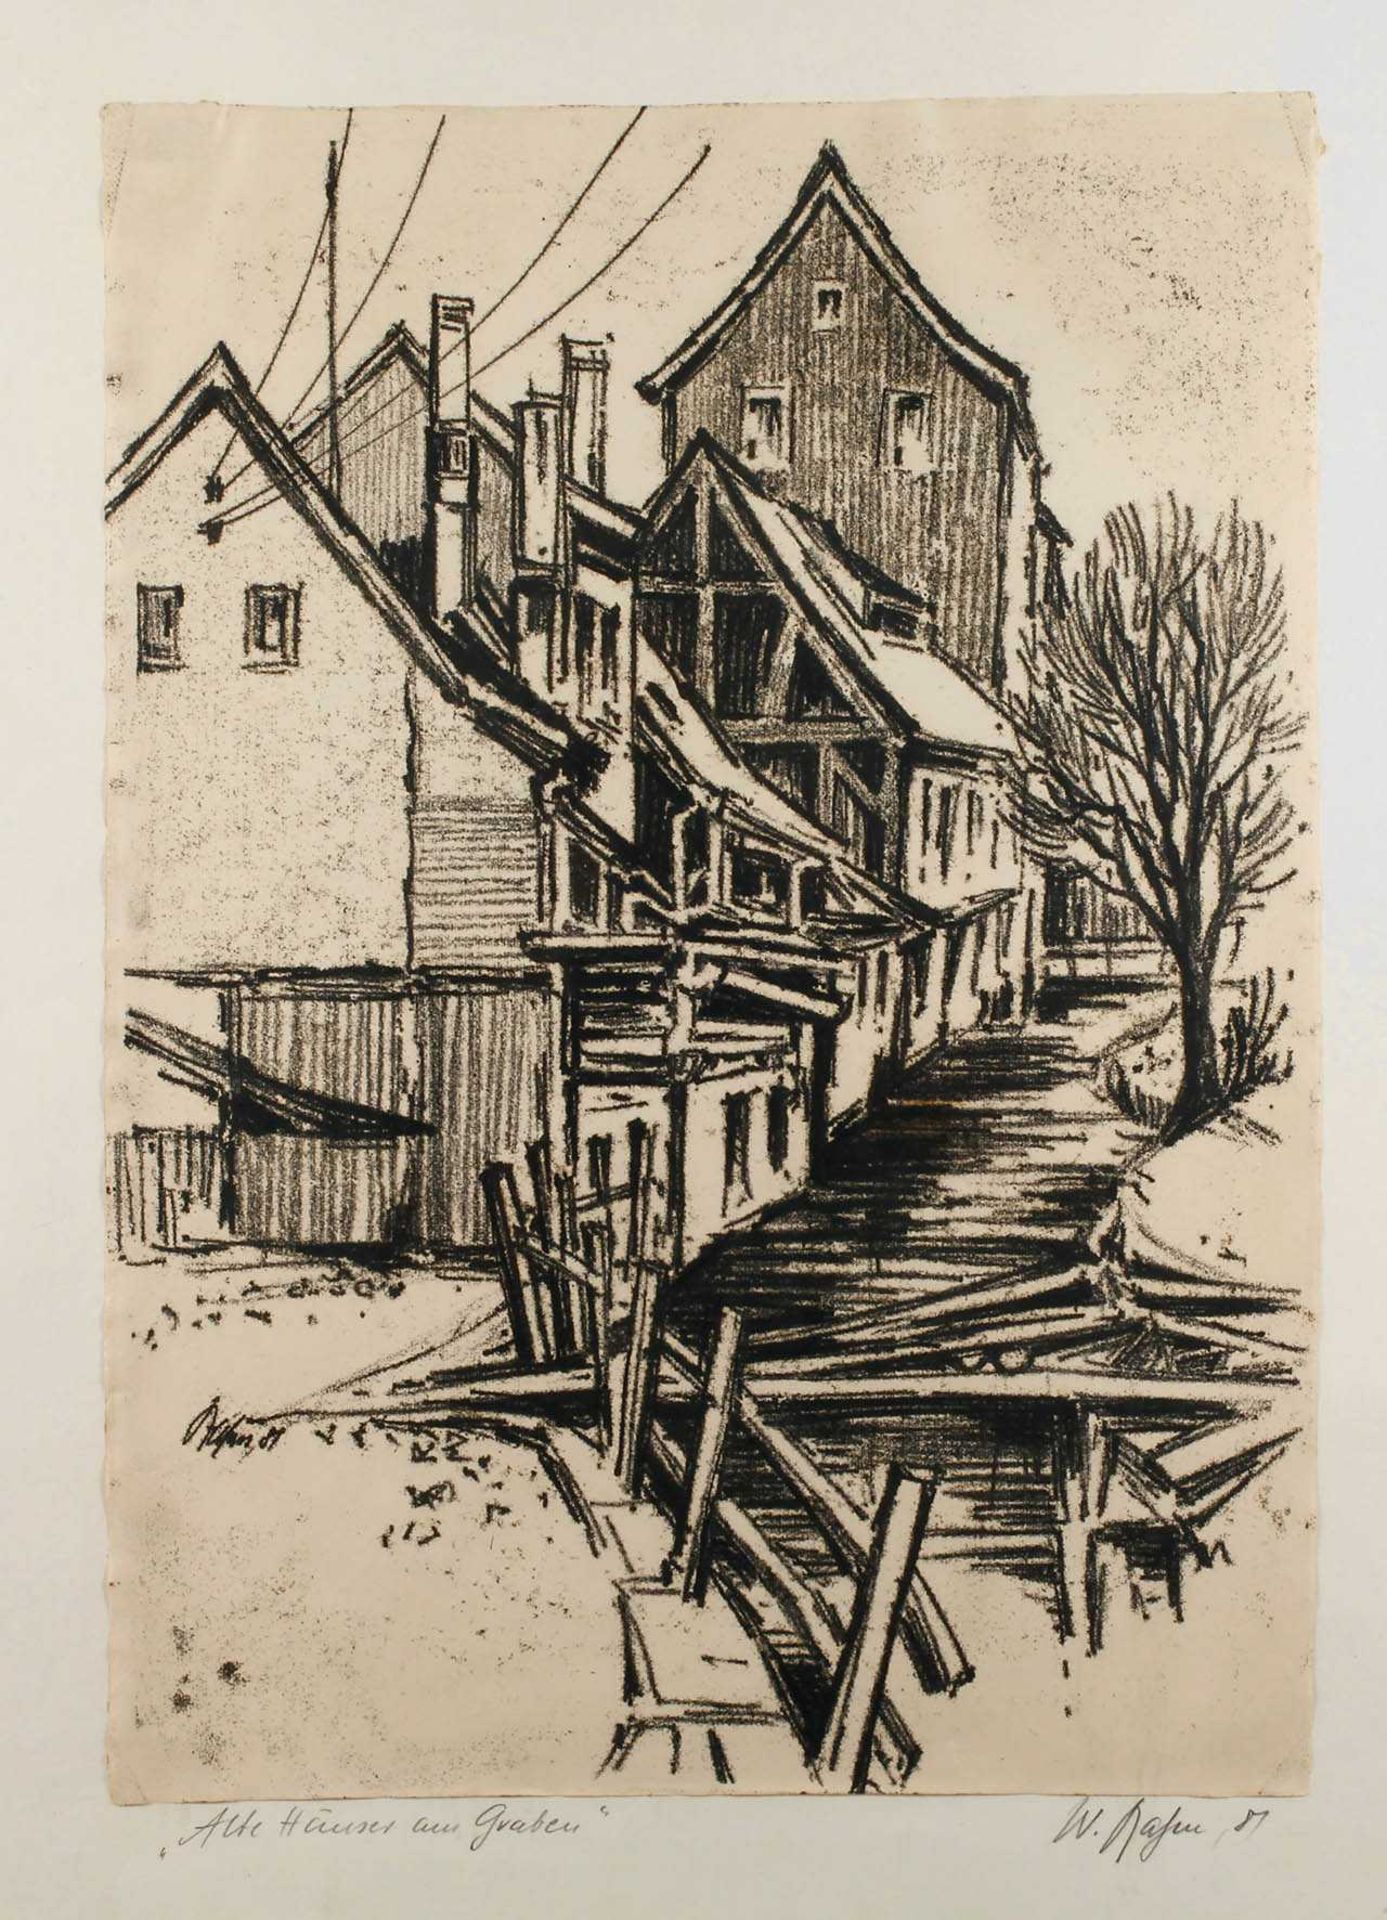 Walter Rahm, "Alte Häuser am Graben" Mühlgraben mit den Weberhäusern an der Bleichstraße in